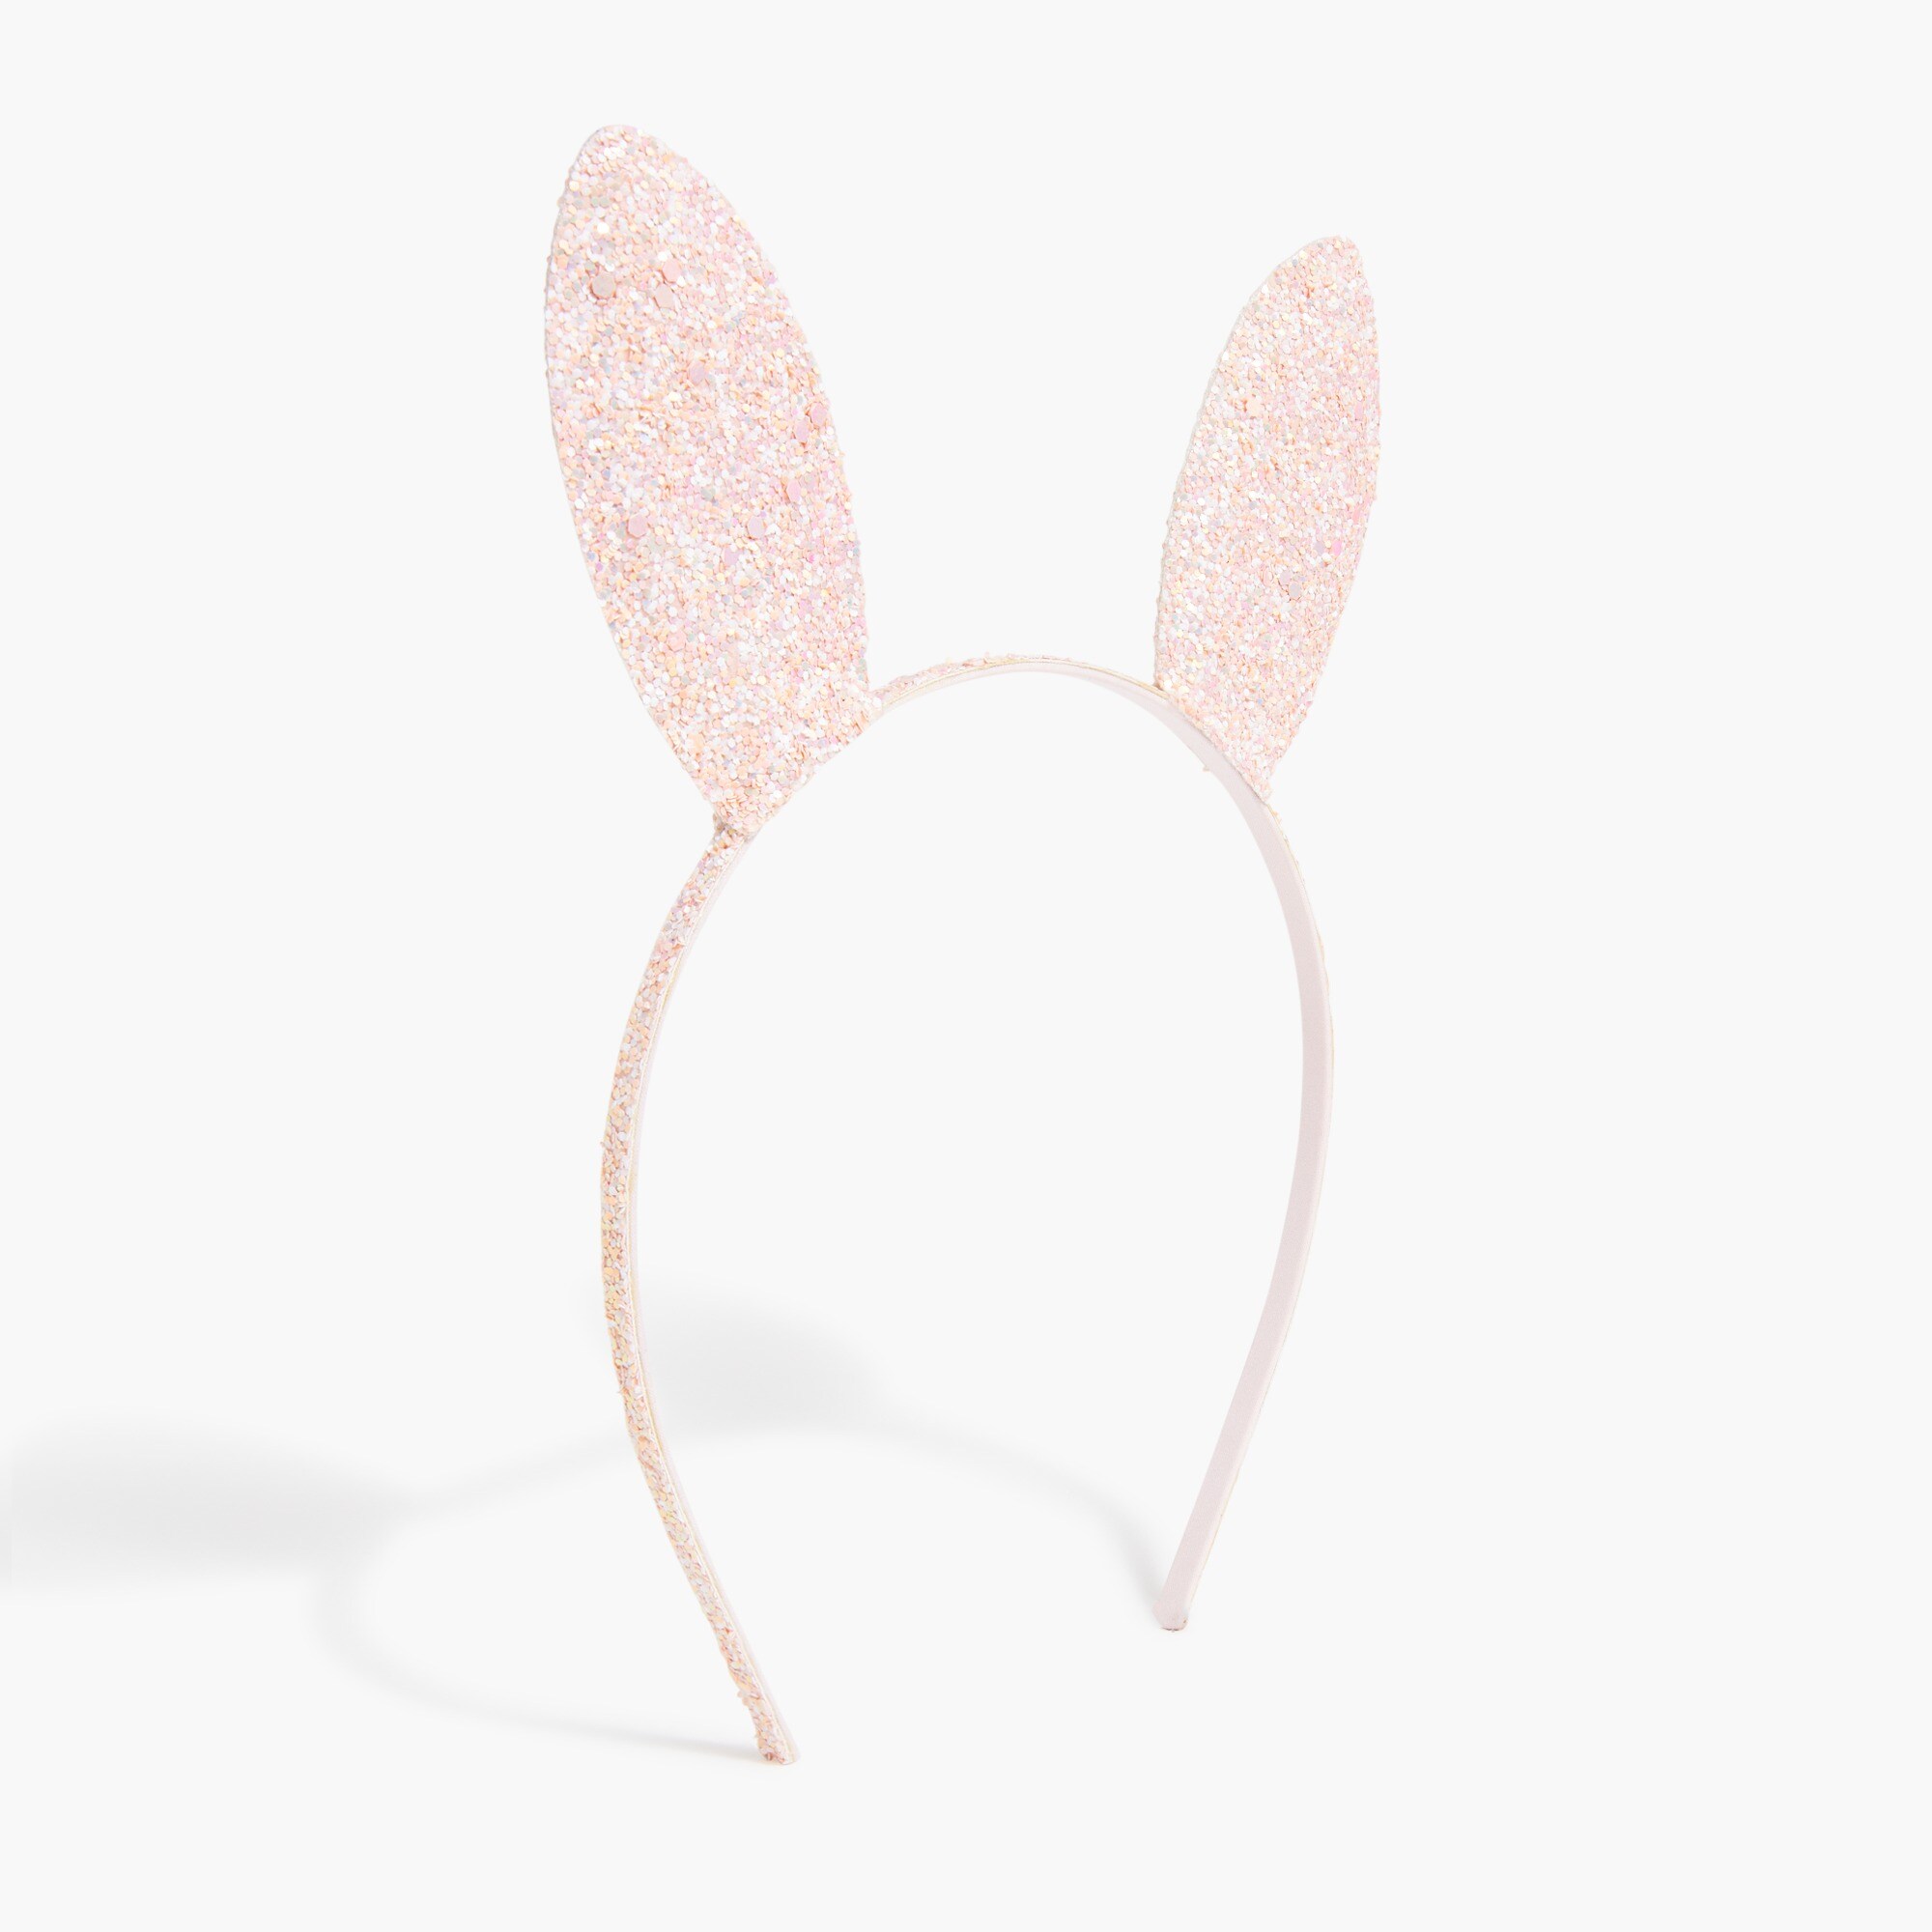  Girls' bunny ear headband